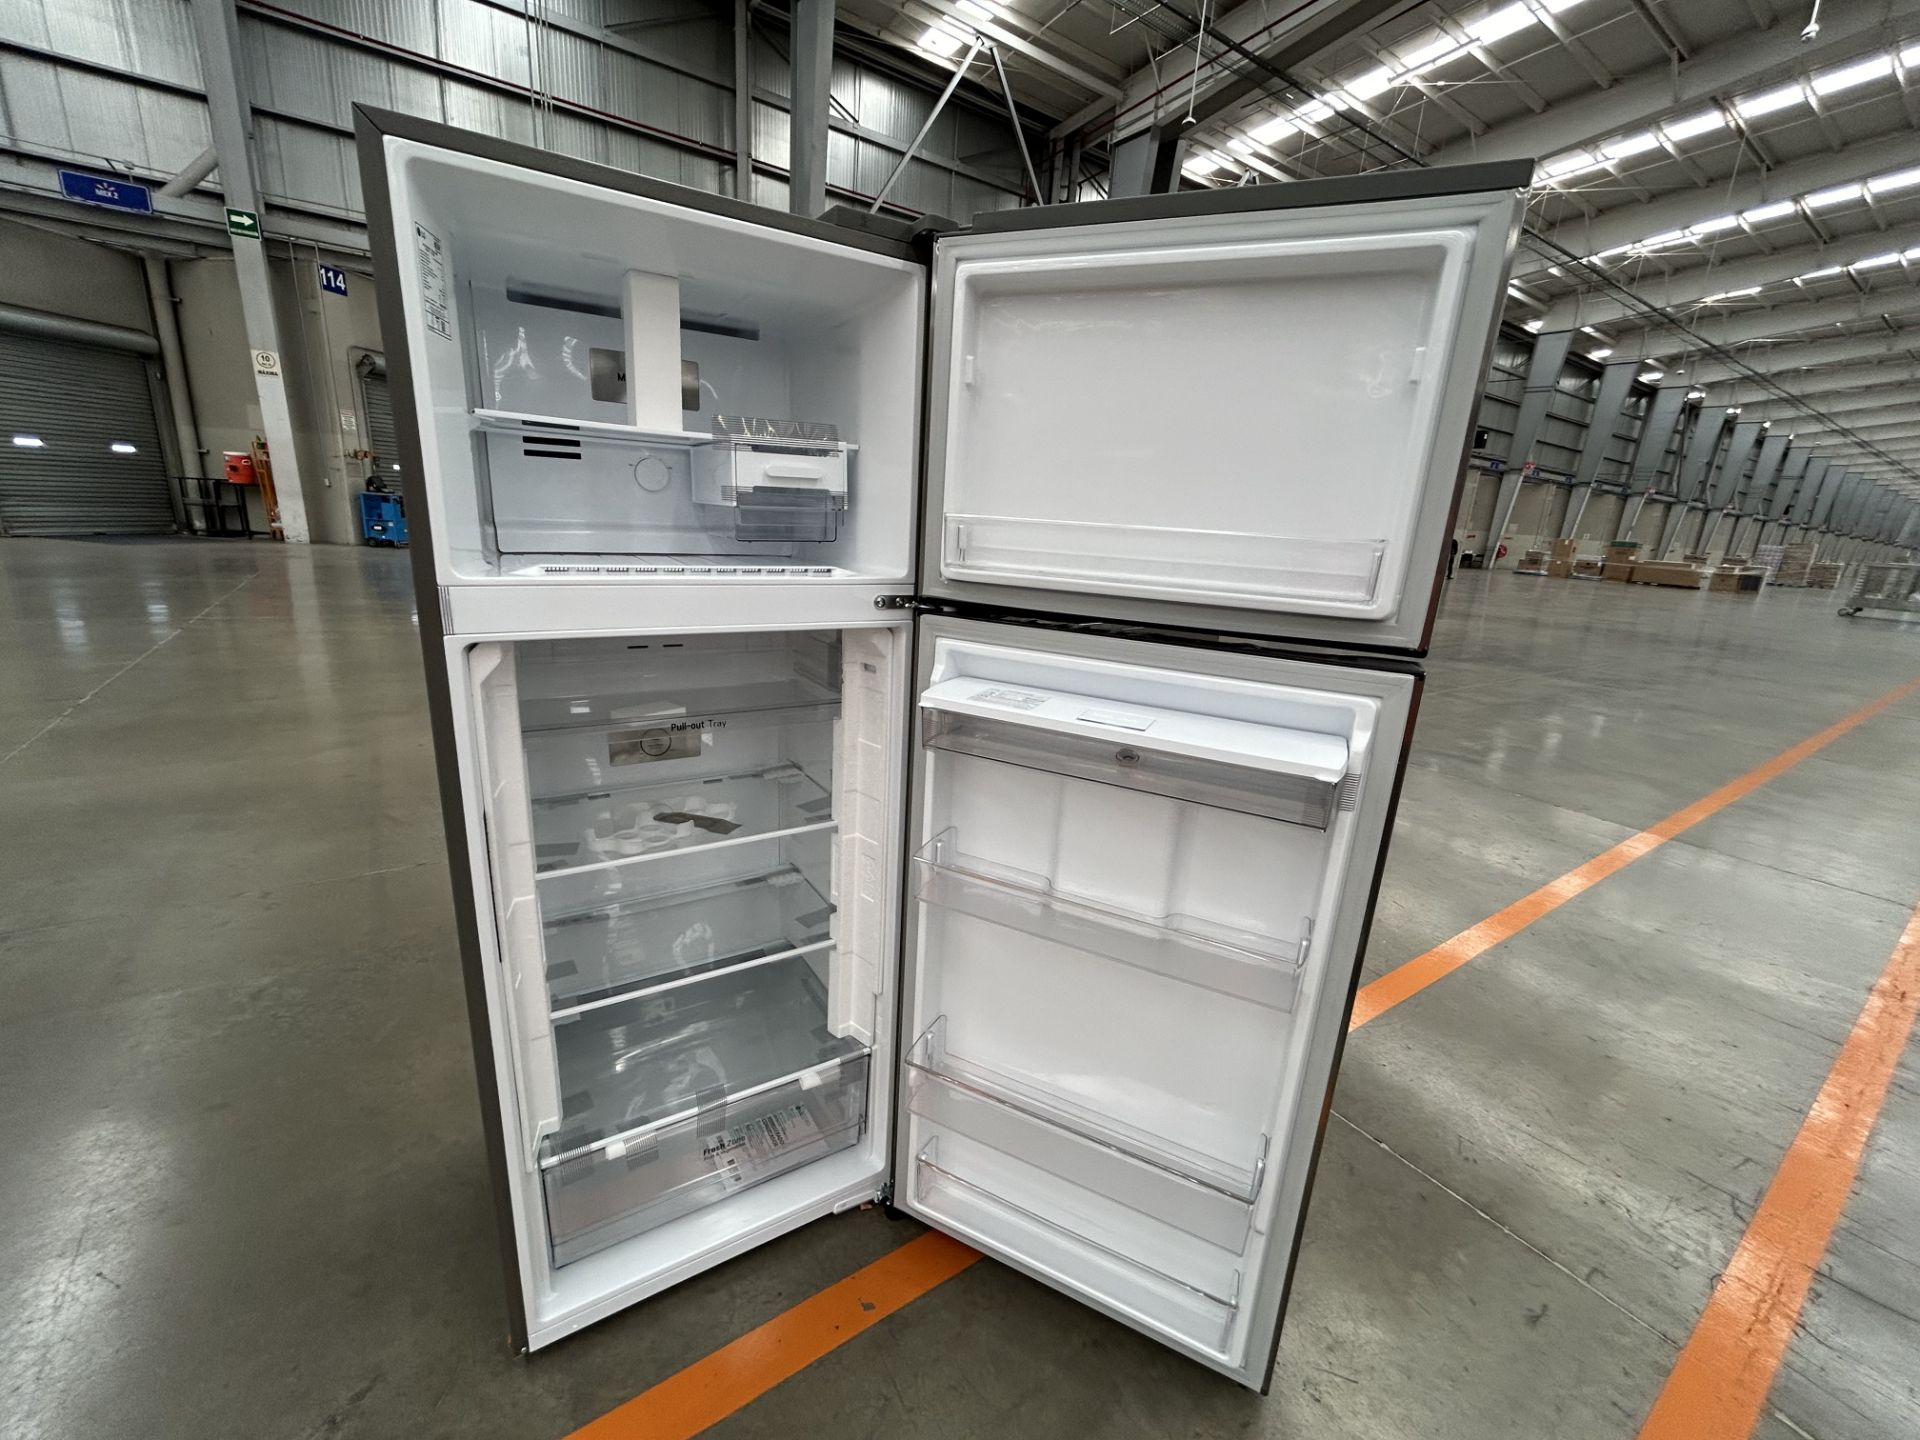 Lote de 2 refrigeradores contiene: 1 refrigerador con dispensador de agua Marca LG, Modelo VT40WP, - Image 6 of 7